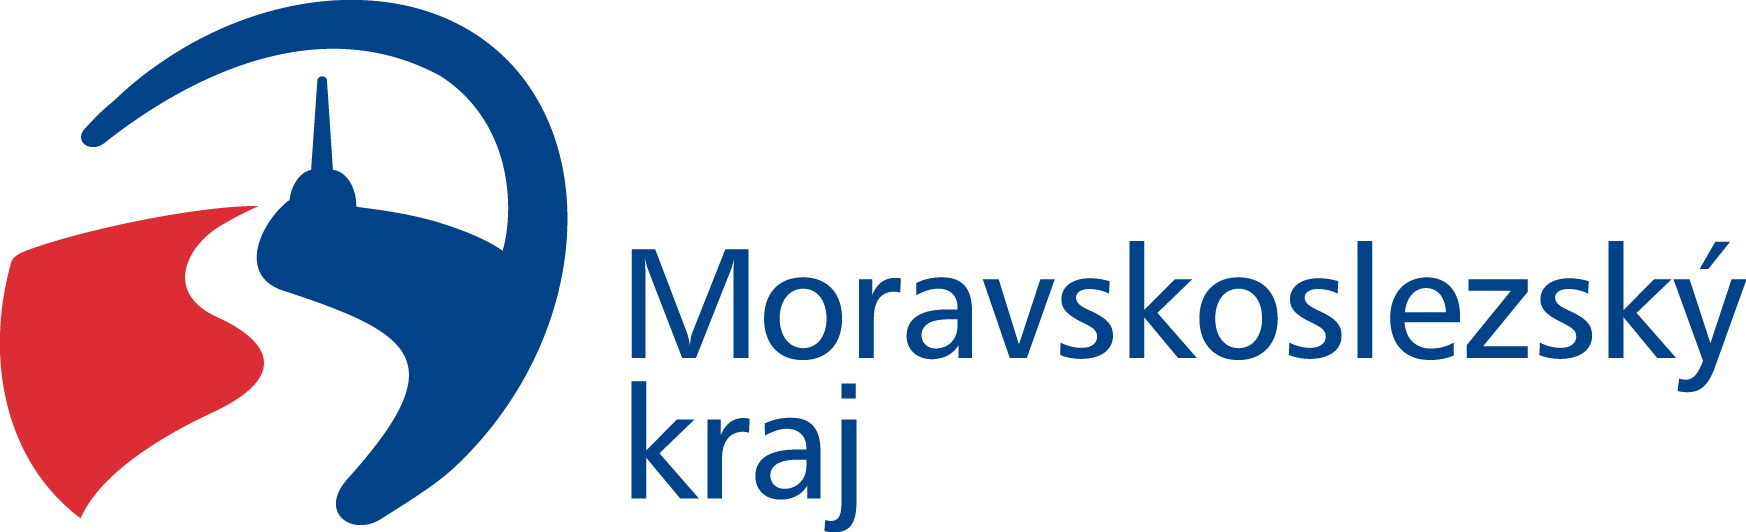 Moravskoslezský kraj logo